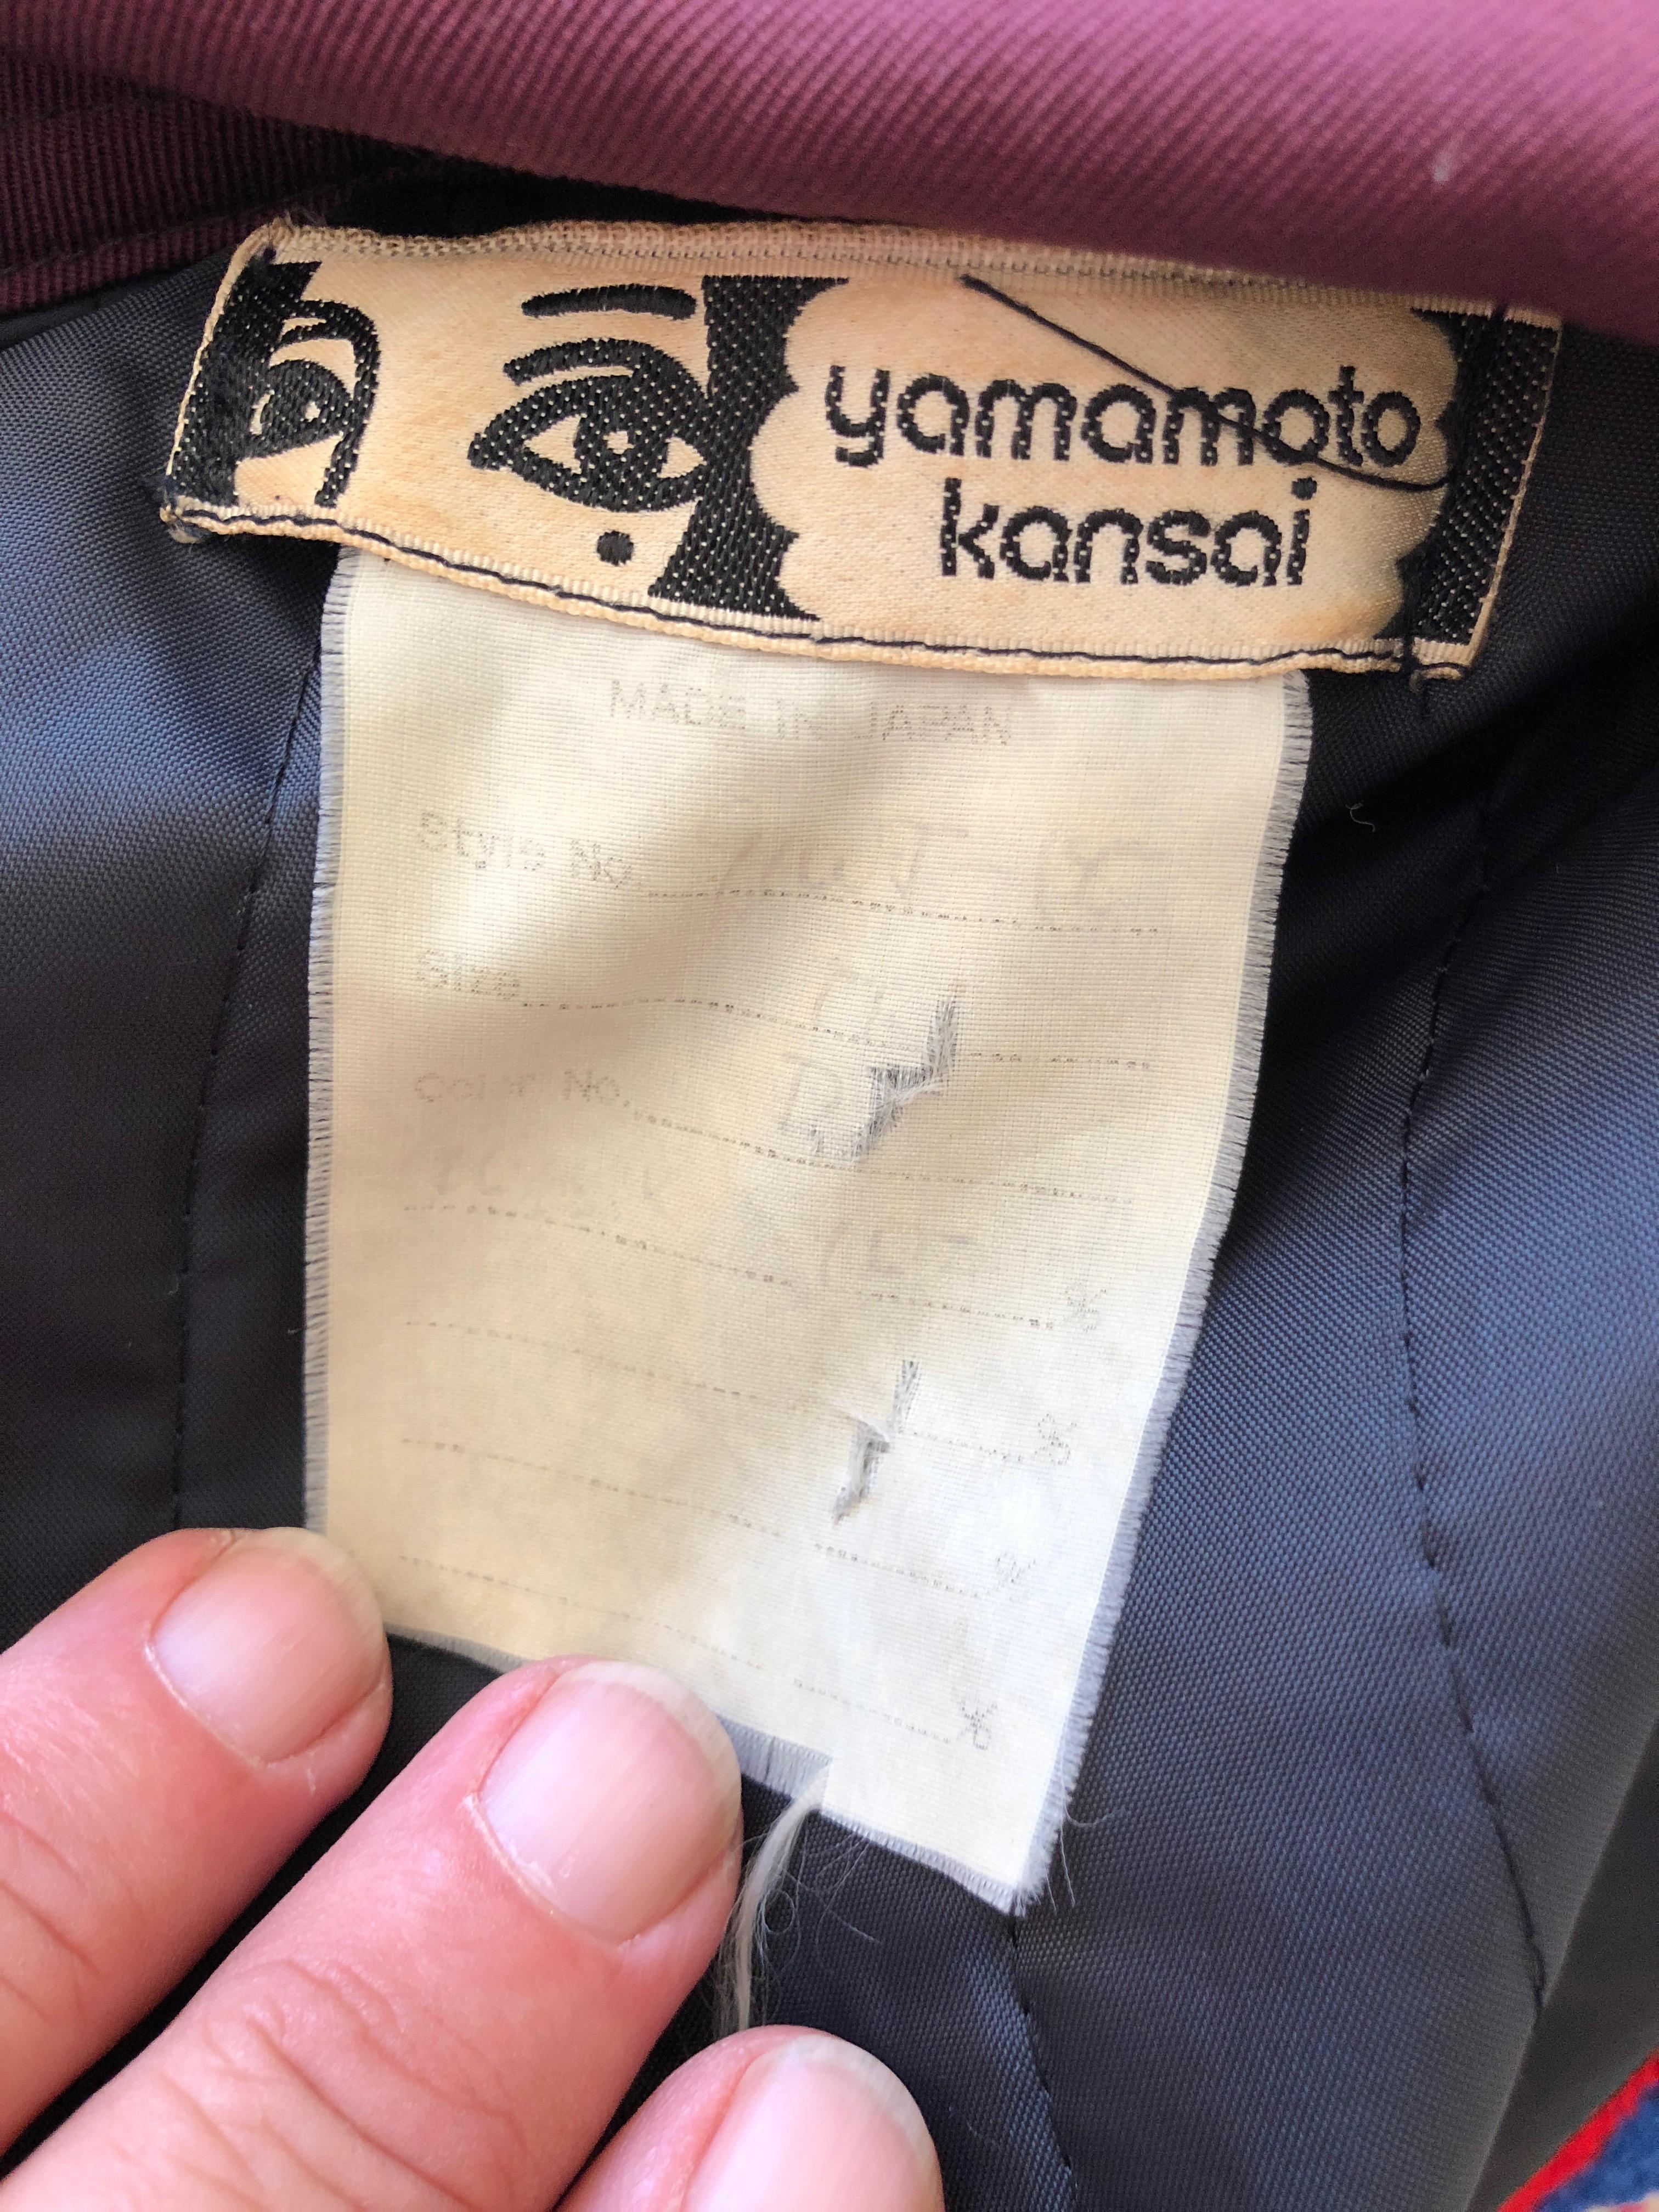 KANSAI YAMAMOTO 1981 Rare Collectible Unisex Embellished Jacket w Suede Fringe For Sale 8